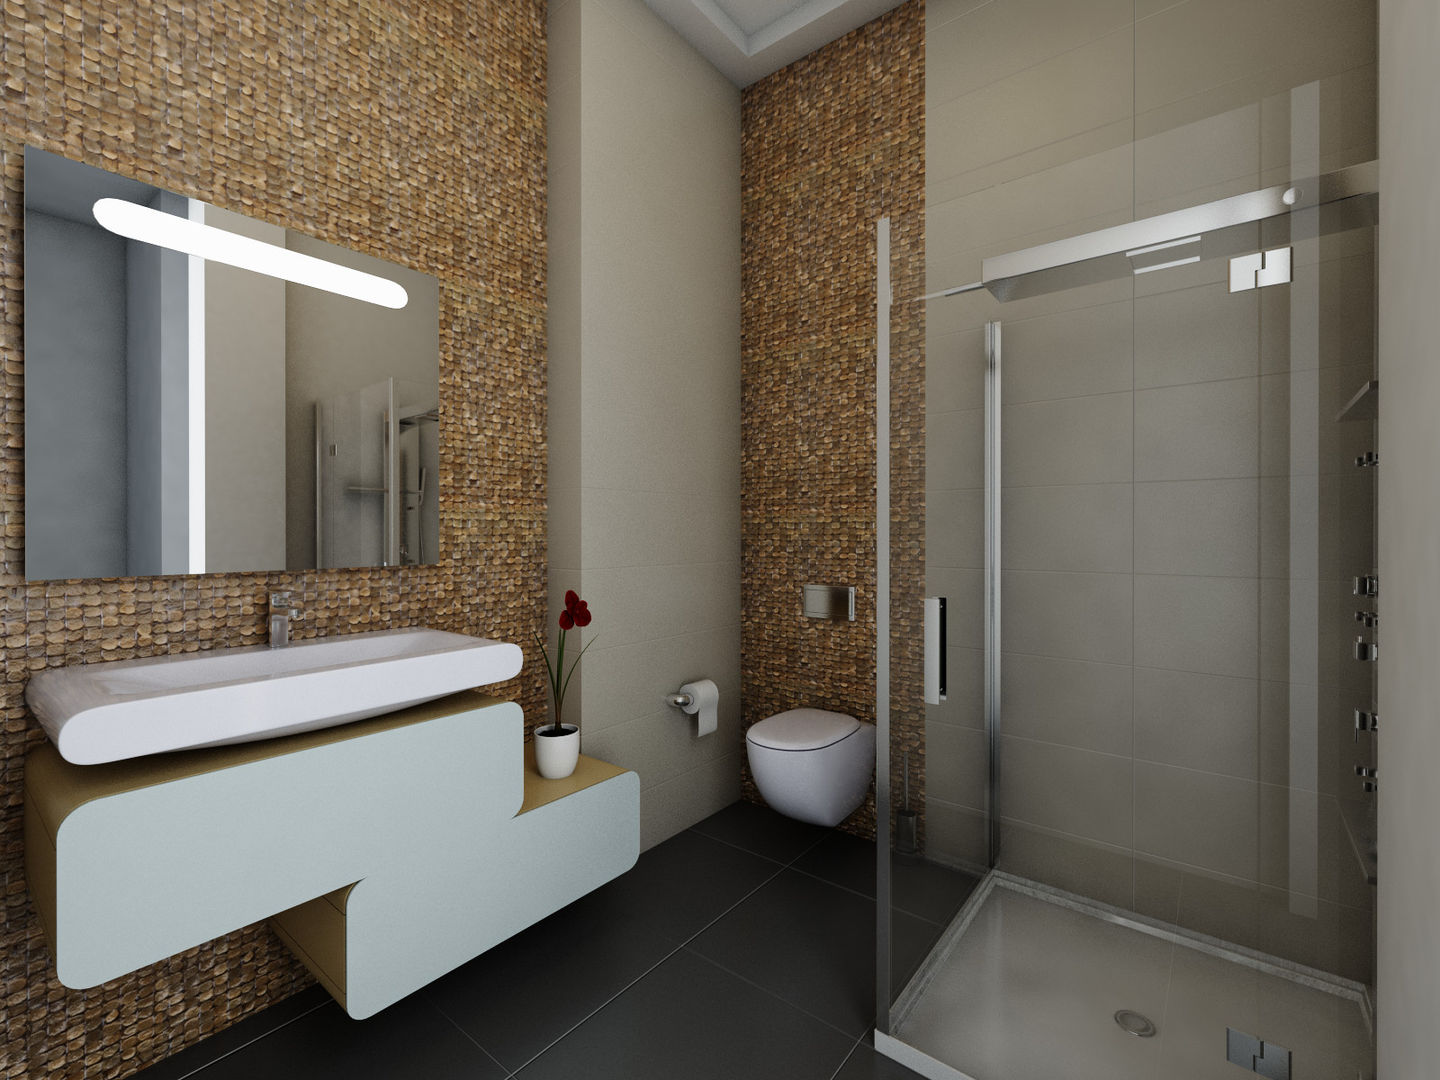 Fas villa projemiz , GÜL MOBİLYA-MUTFAK-BANYO GÜL MOBİLYA-MUTFAK-BANYO Modern bathroom Wood Wood effect Sinks